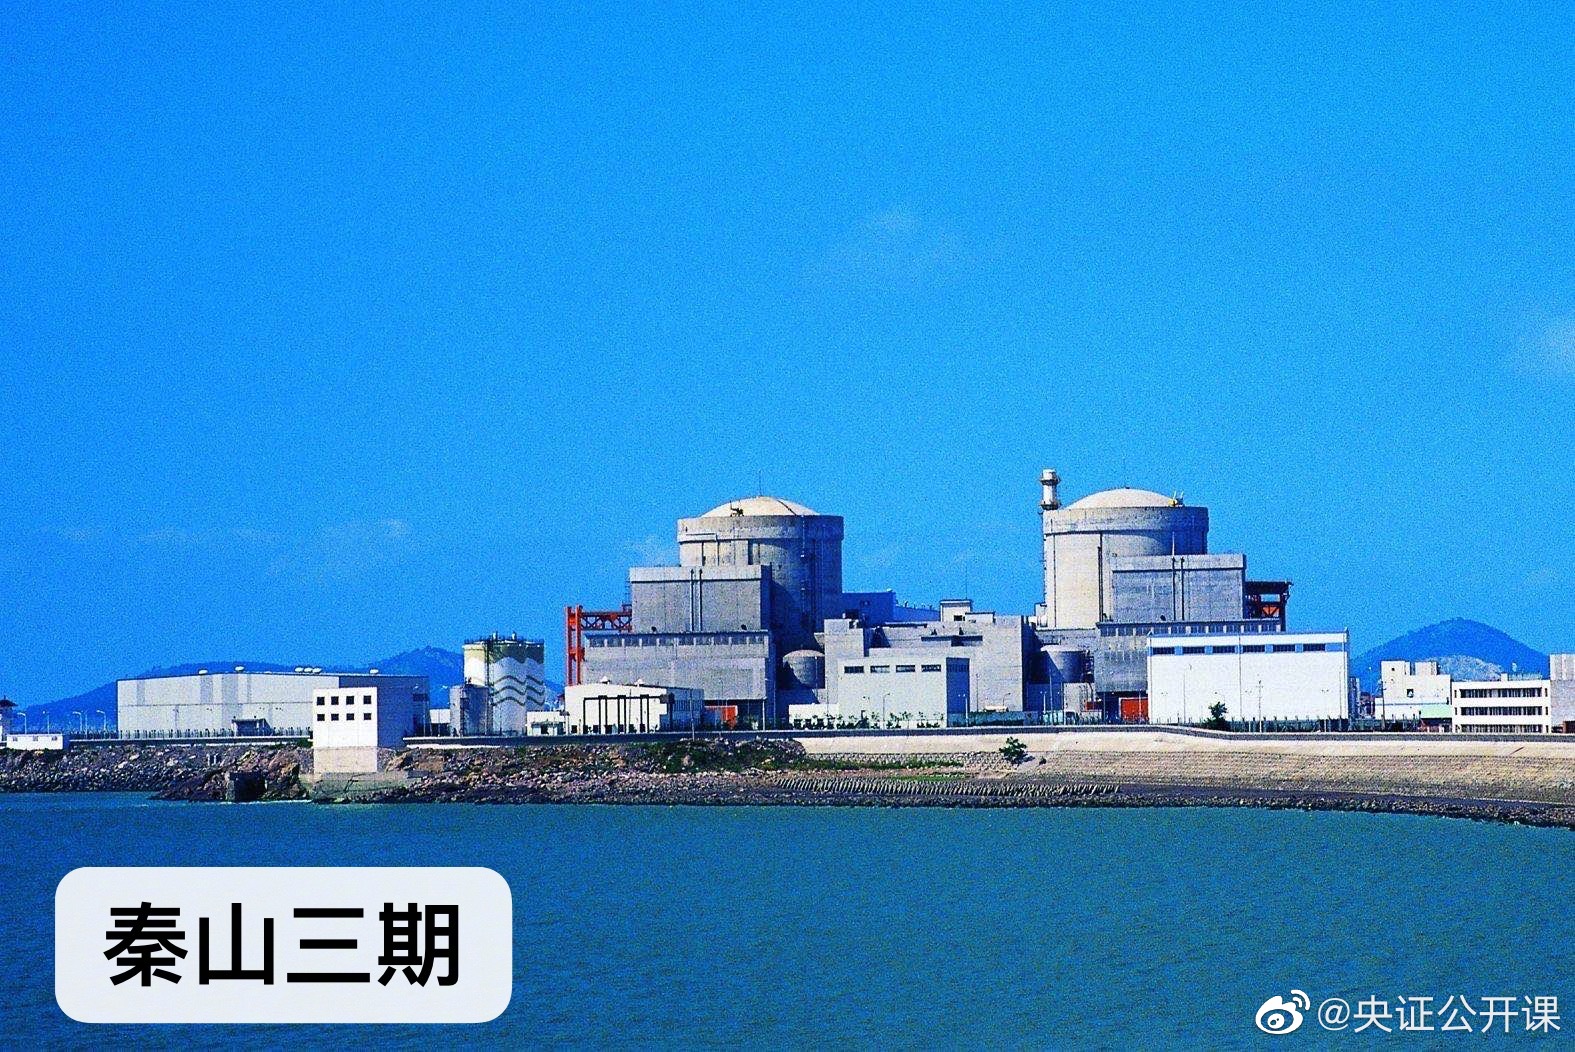 秦山核电站是中国自行设计,建造和运营管理的第一座核